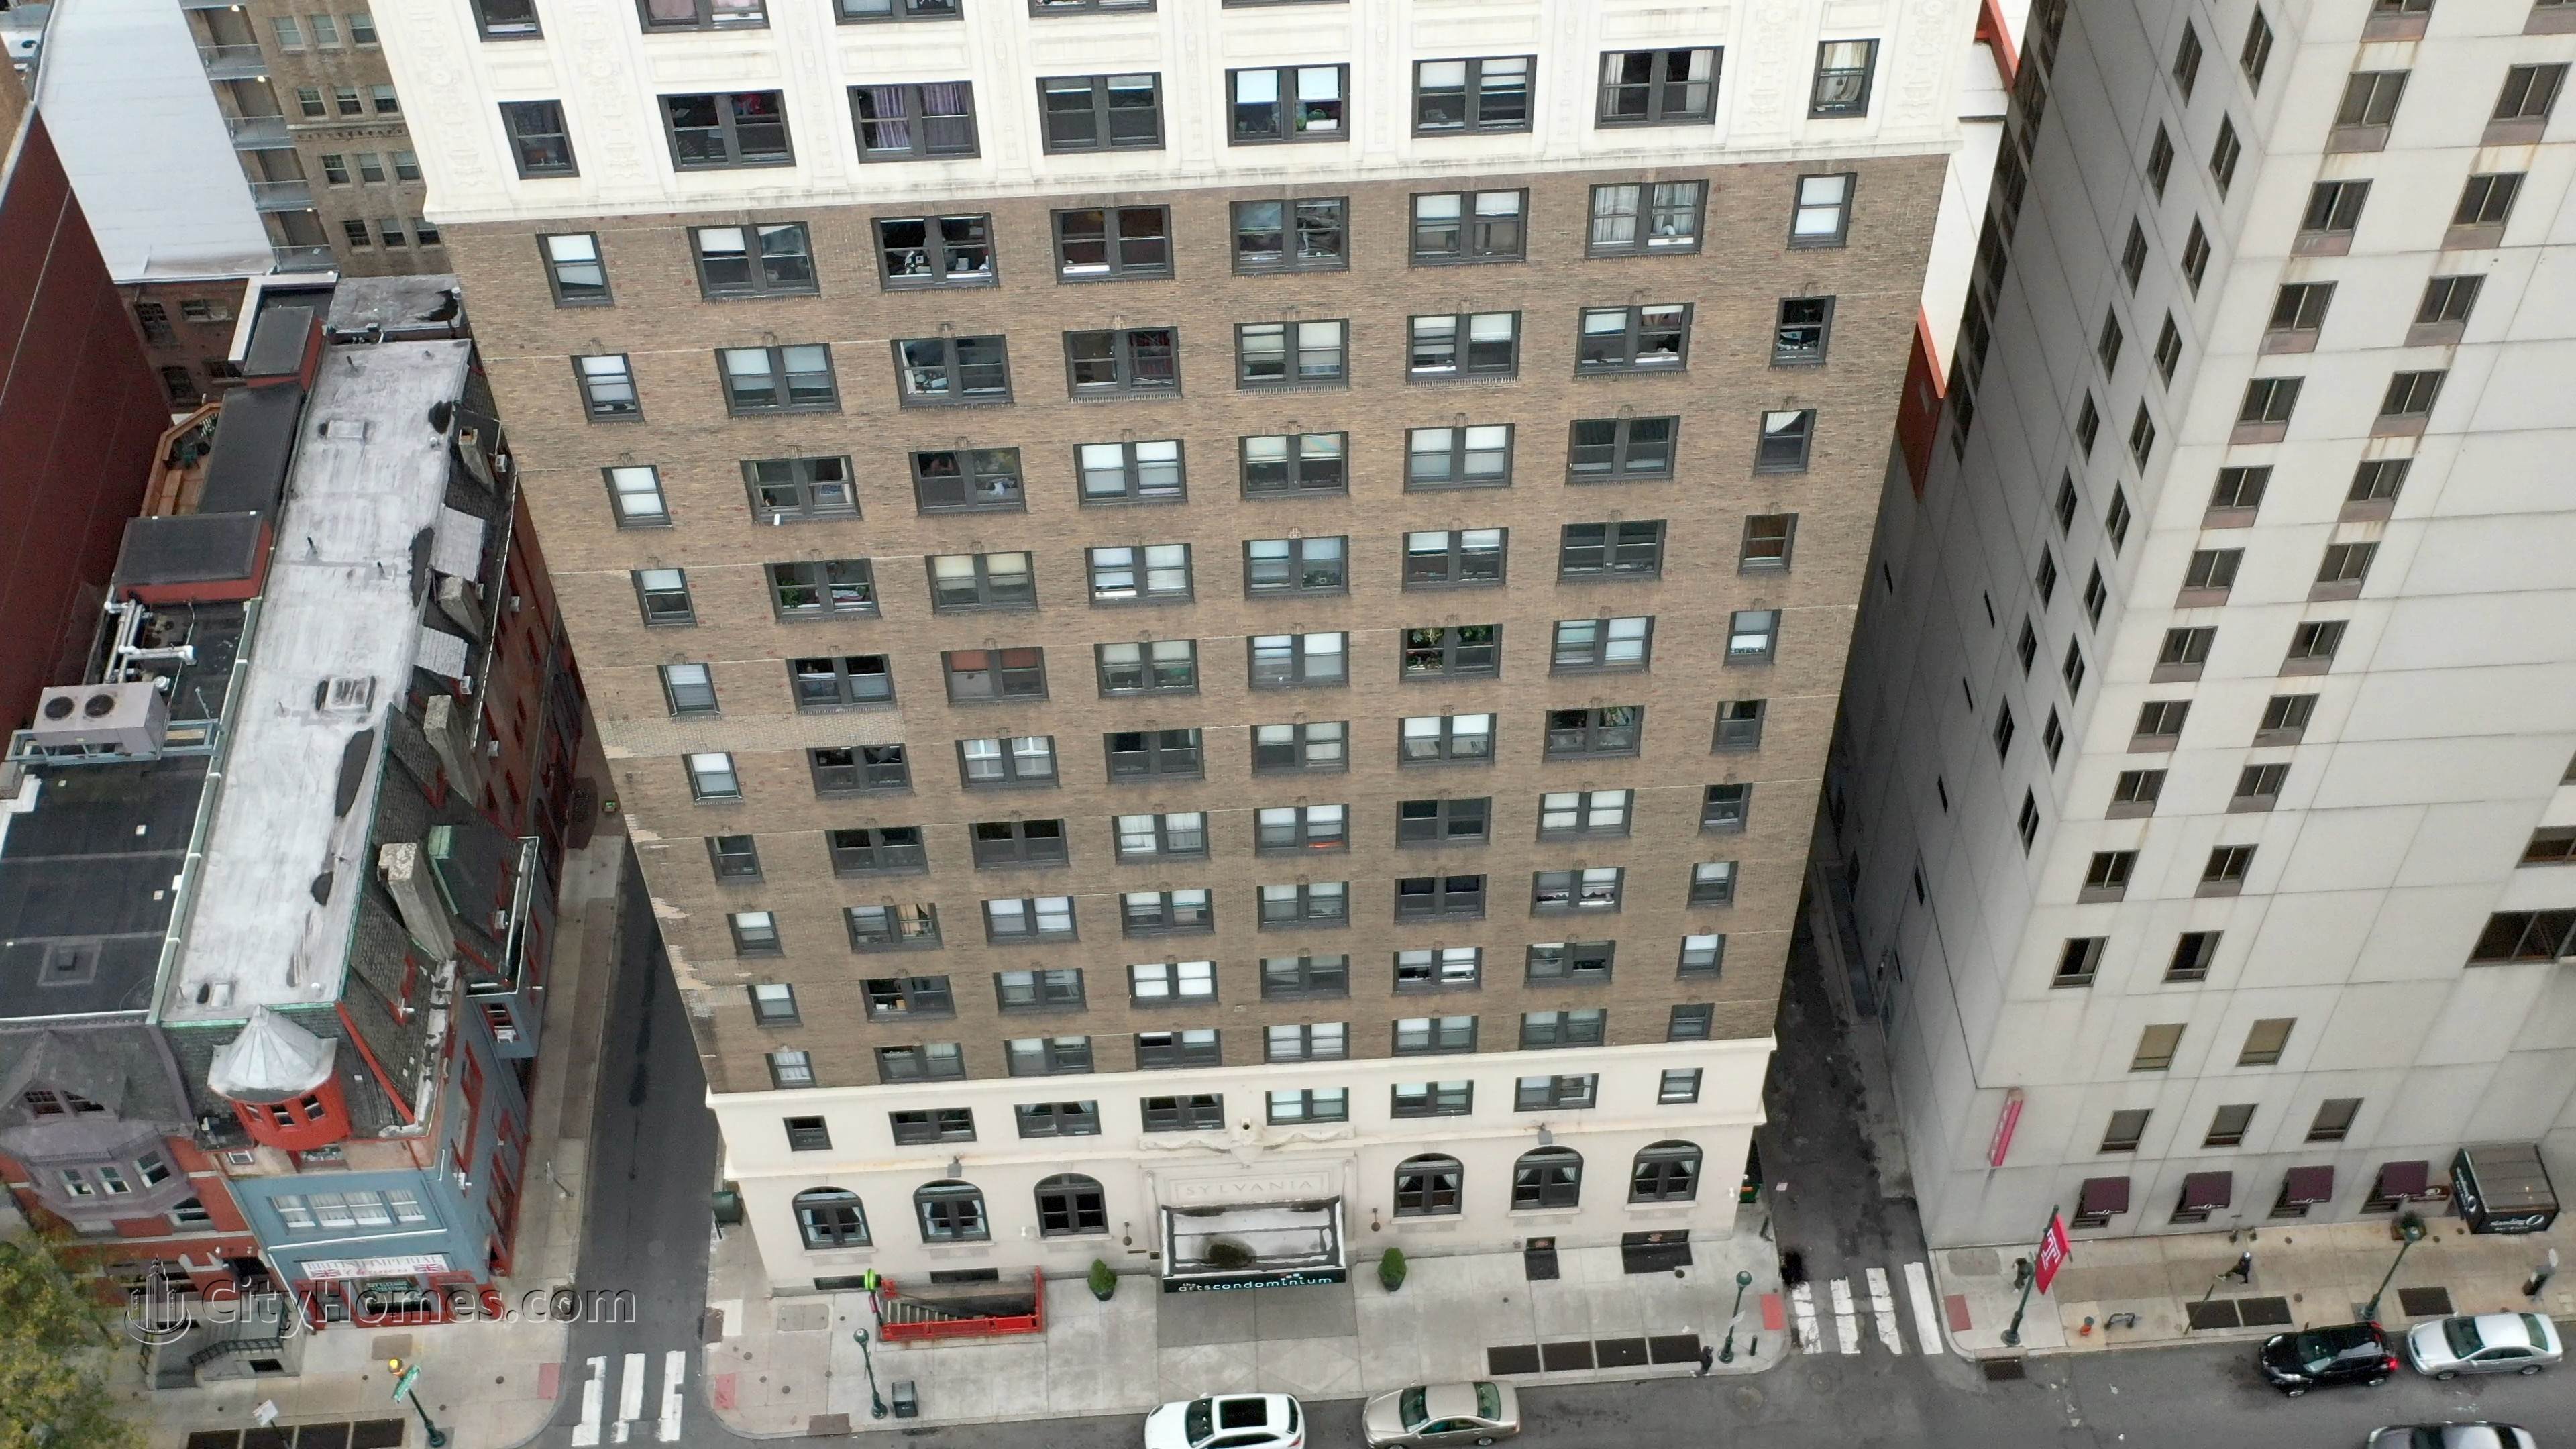 2. The Arts Condominium building at 1324 Locust St, Center City, Philadelphia, PA 19107